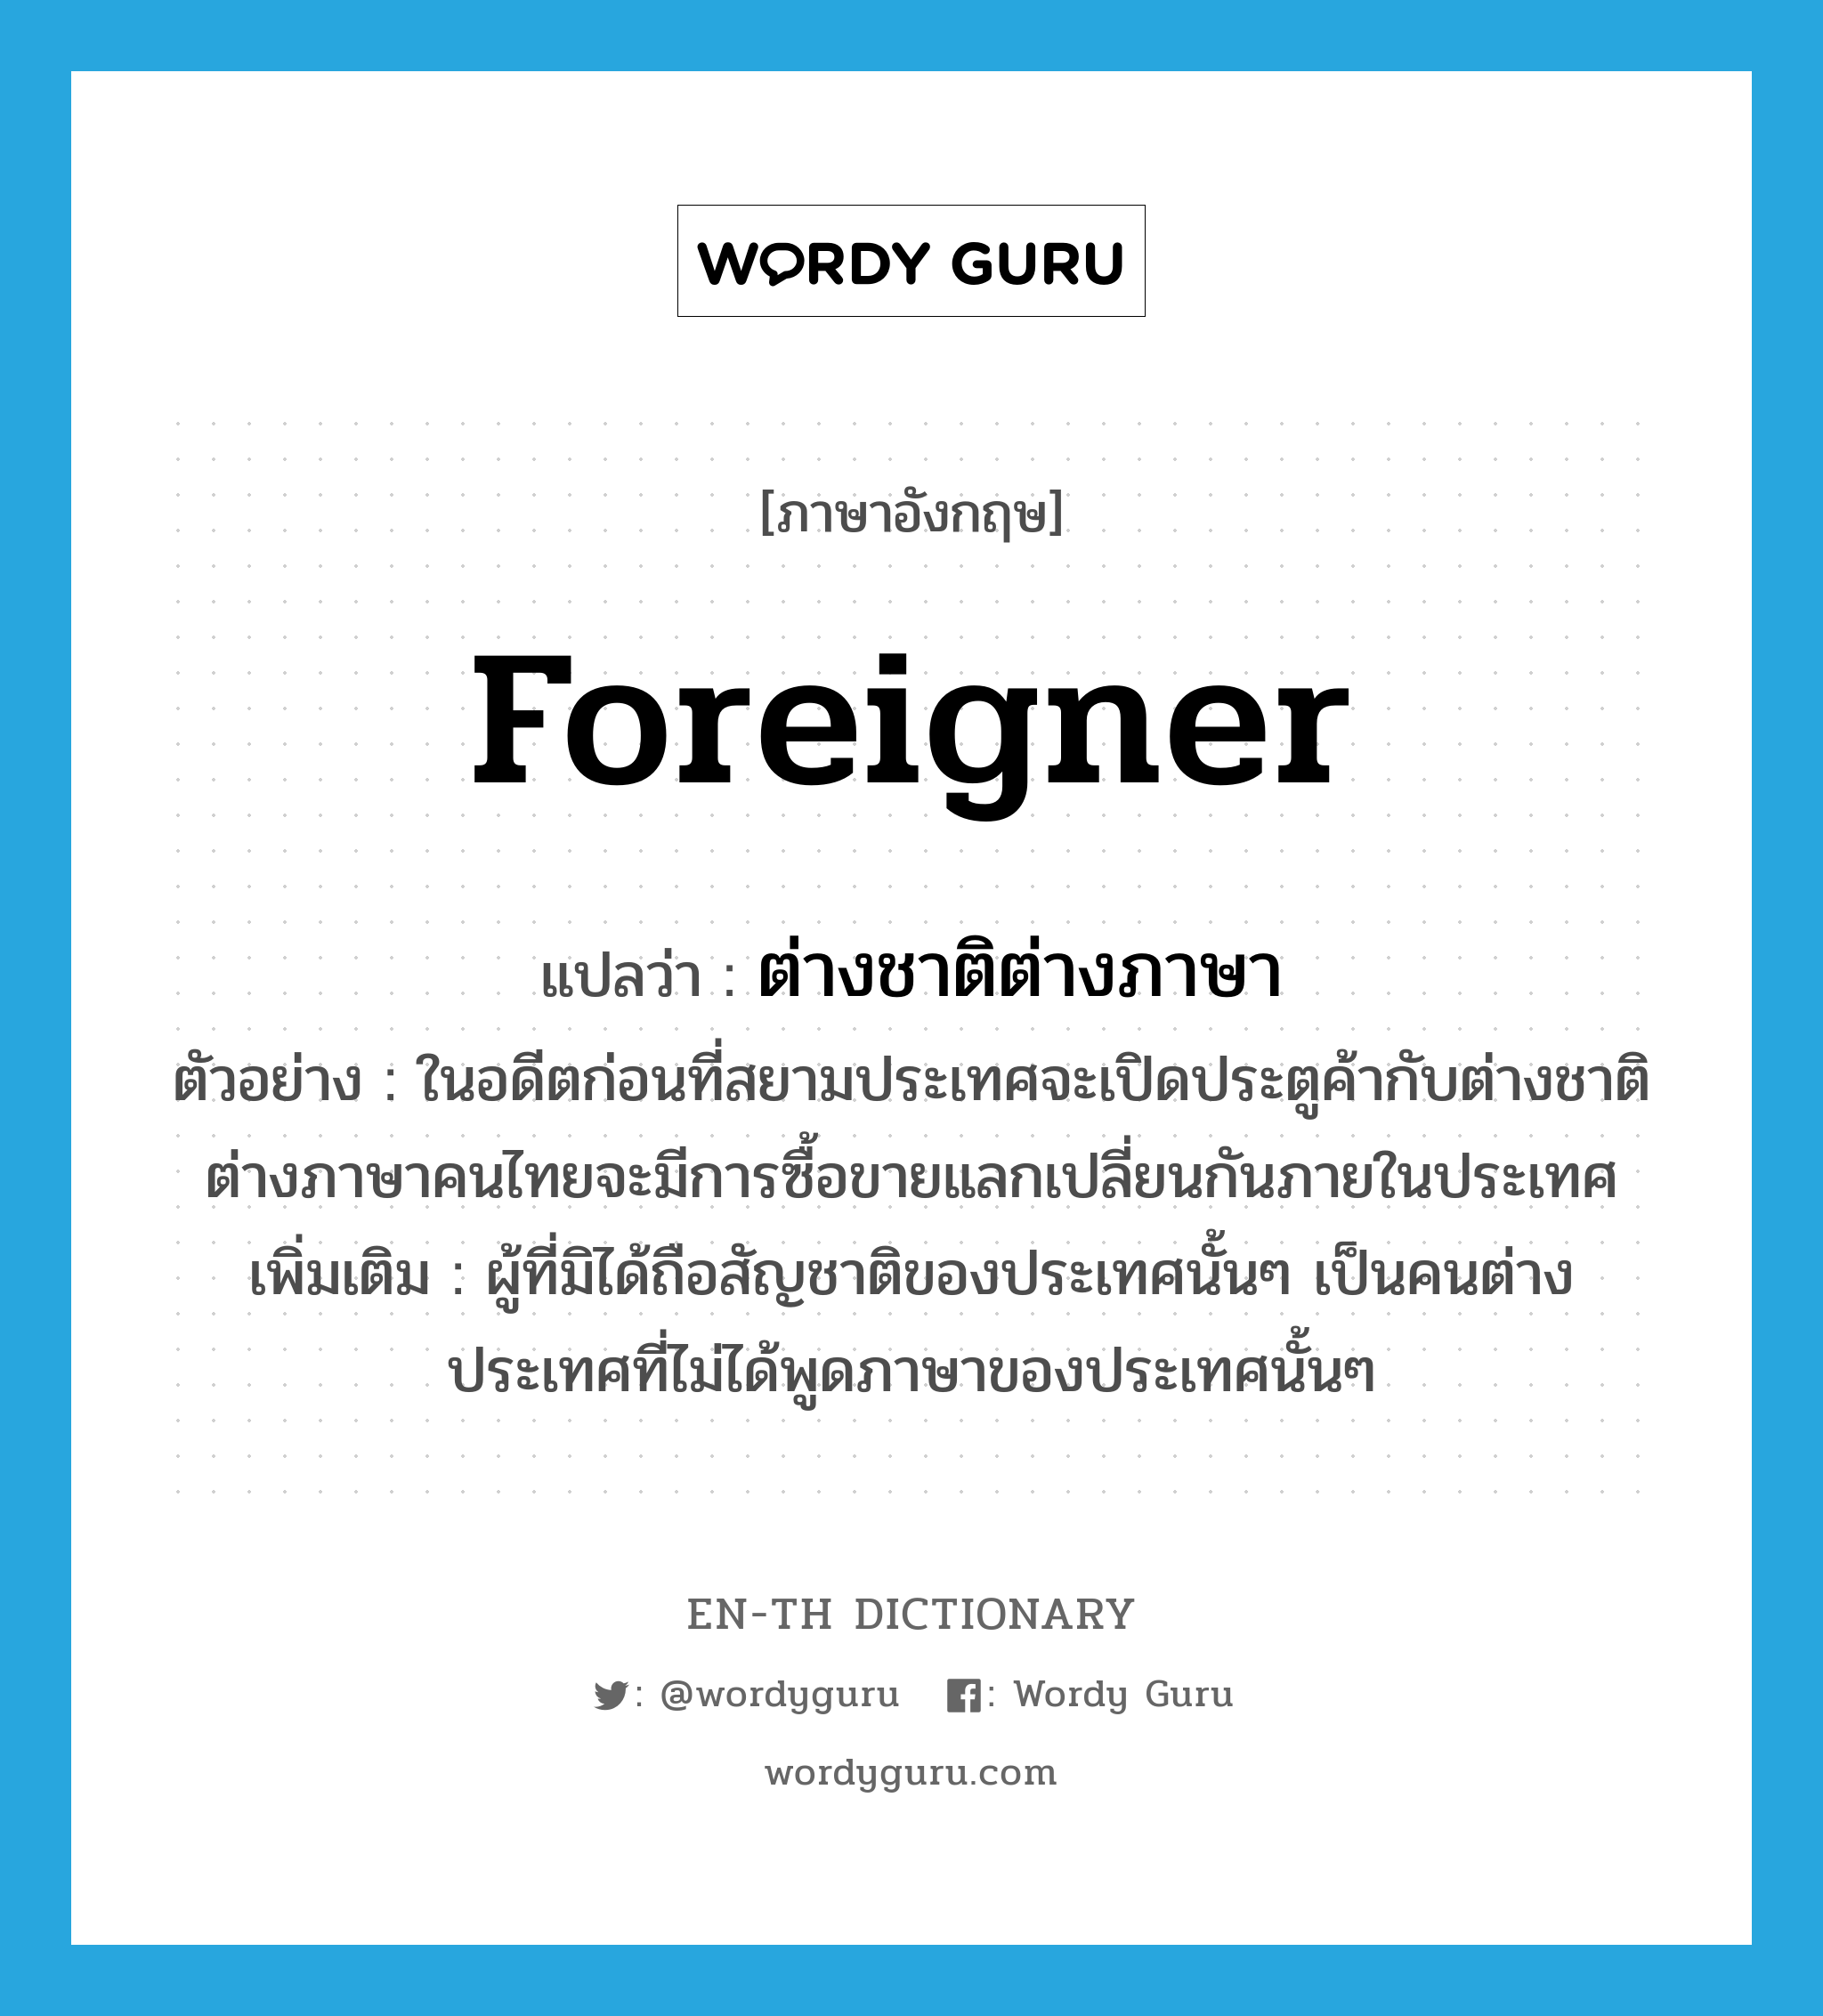 ต่างชาติต่างภาษา ภาษาอังกฤษ?, คำศัพท์ภาษาอังกฤษ ต่างชาติต่างภาษา แปลว่า foreigner ประเภท N ตัวอย่าง ในอดีตก่อนที่สยามประเทศจะเปิดประตูค้ากับต่างชาติต่างภาษาคนไทยจะมีการซื้อขายแลกเปลี่ยนกันภายในประเทศ เพิ่มเติม ผู้ที่มิได้ถือสัญชาติของประเทศนั้นๆ เป็นคนต่างประเทศที่ไม่ได้พูดภาษาของประเทศนั้นๆ หมวด N